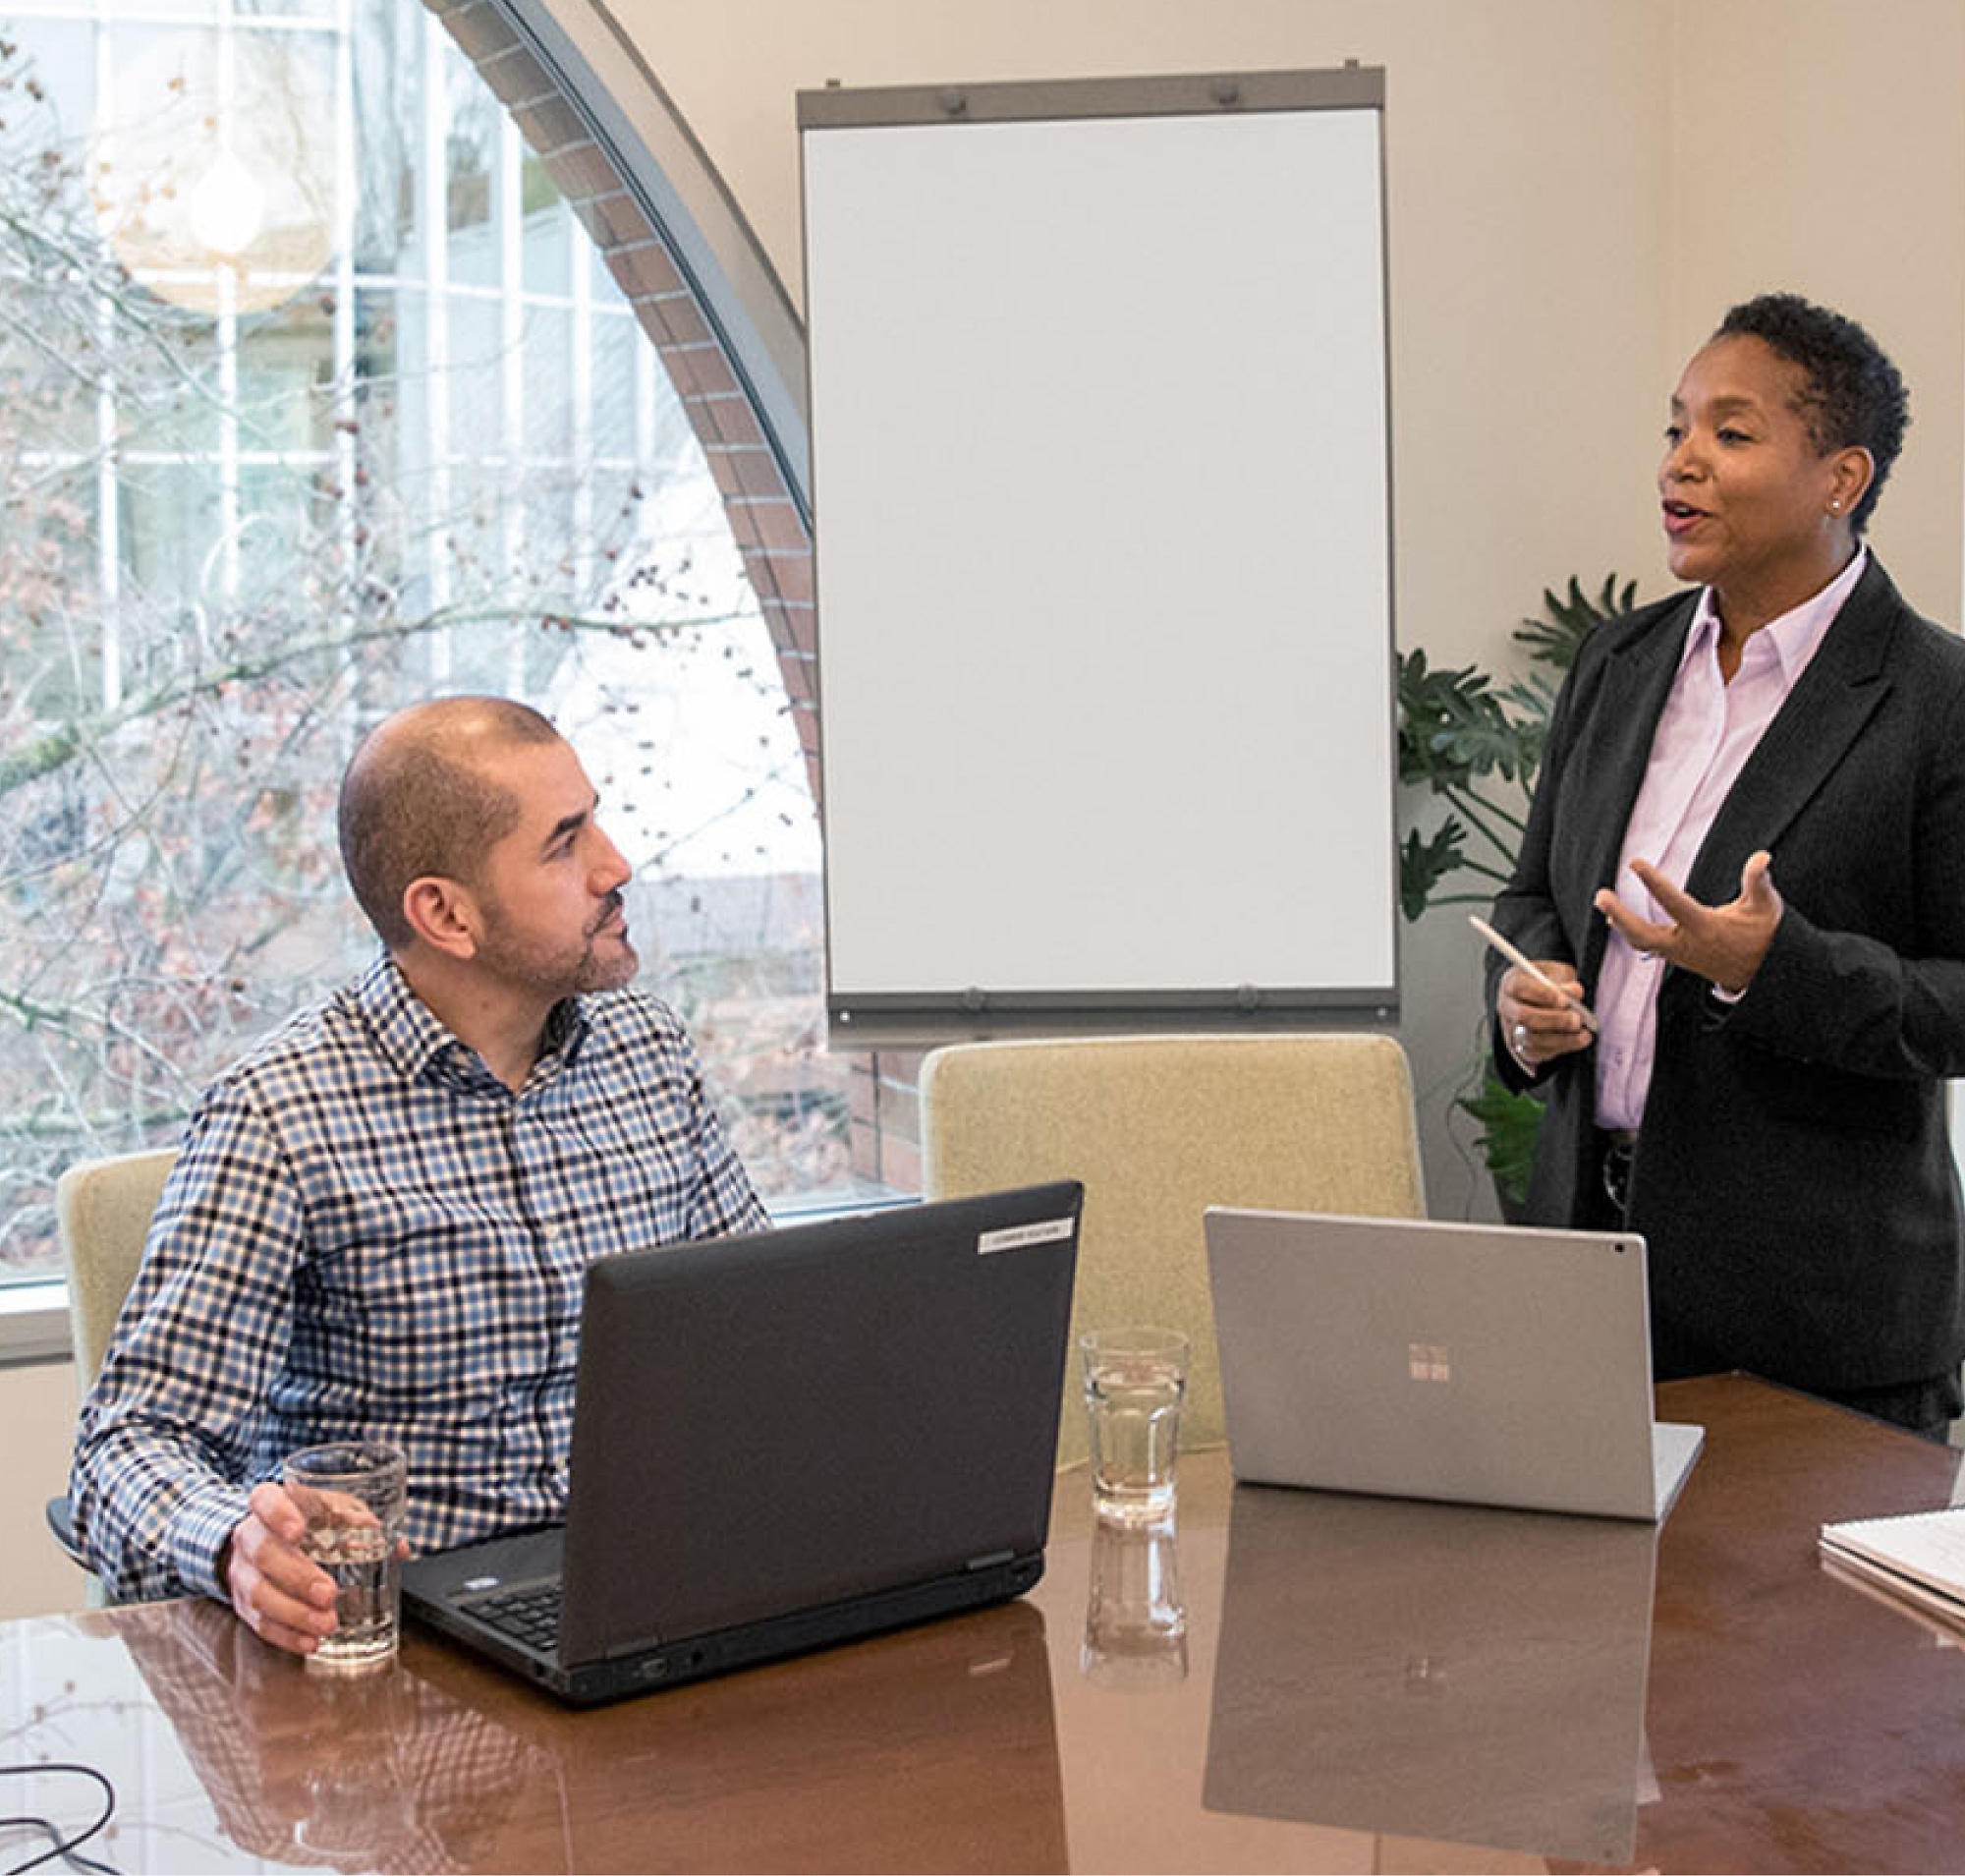 Hai chuyên gia trong phòng họp, một người đang đứng trình bày và một người ngồi tại bàn với máy tính xách tay ở trước bảng trắng.